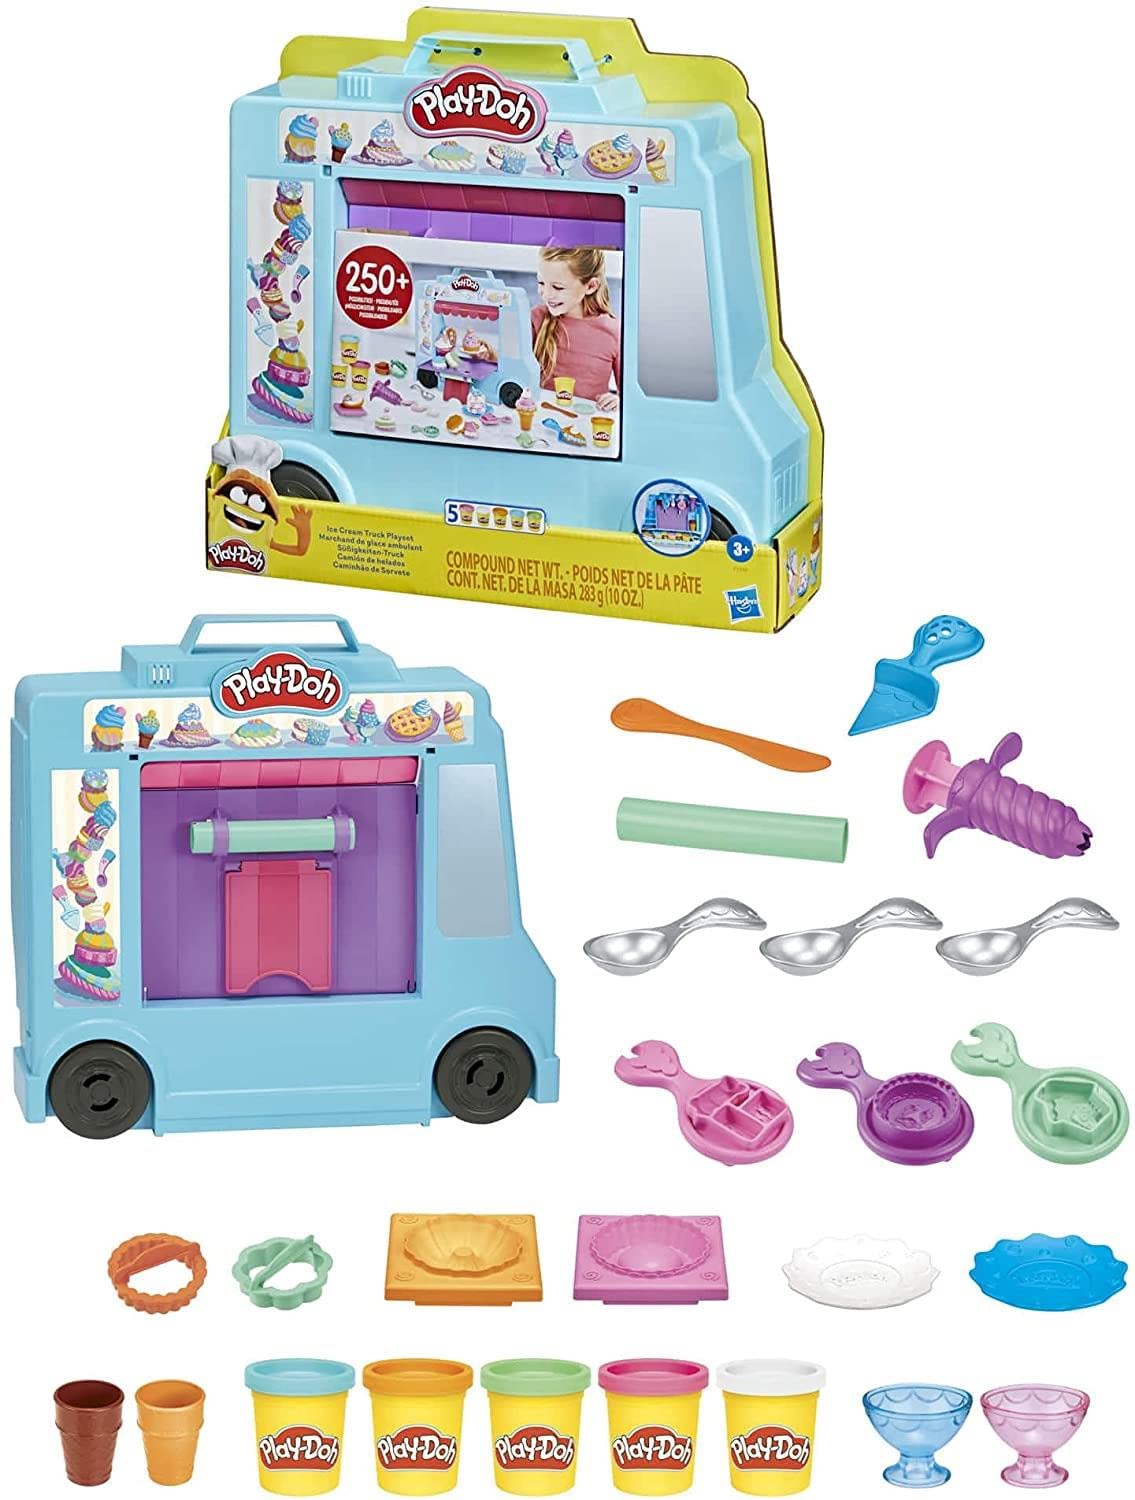 Play-Doh F1390 Eiswagen-Spielset, Spielzeugspielzeug für Kinder ab 3 Jahren mit 20 Werkzeugen, 5 Modelliermasse, über 250 mögliche Kombinationen, Mehrfarbig